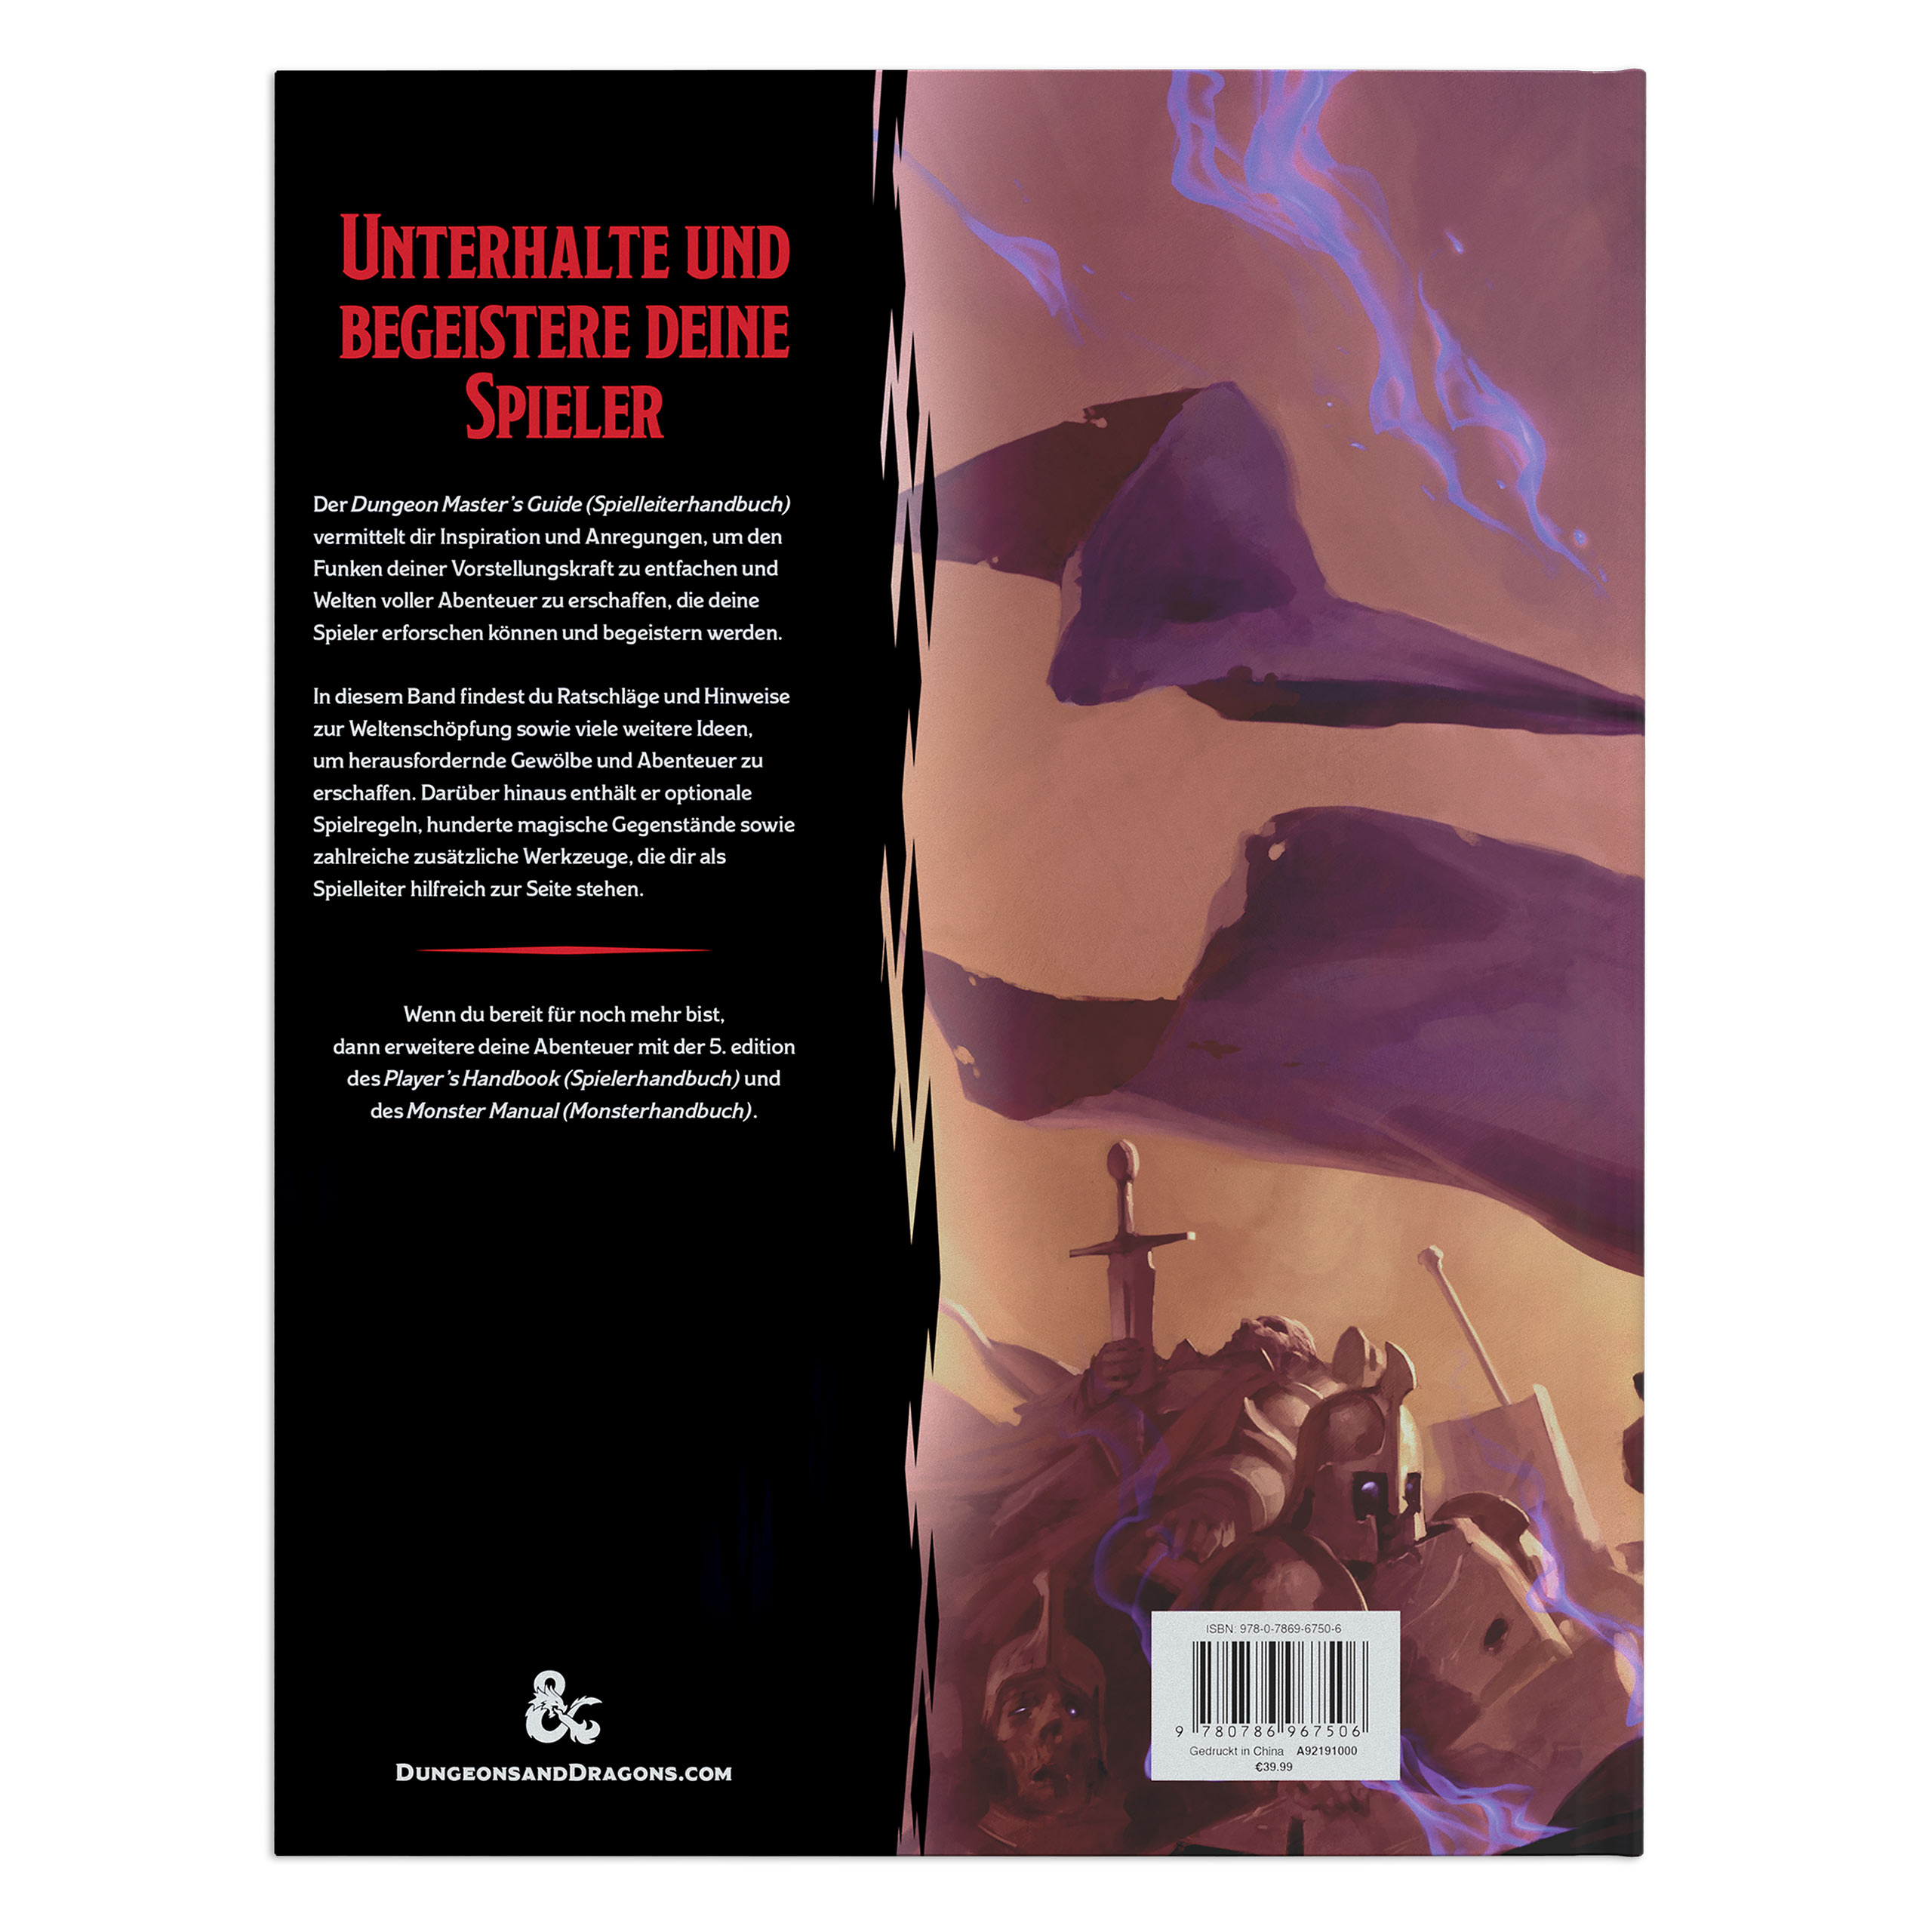 Dungeons & Dragons - Guide du Maître du Donjon Règles de base